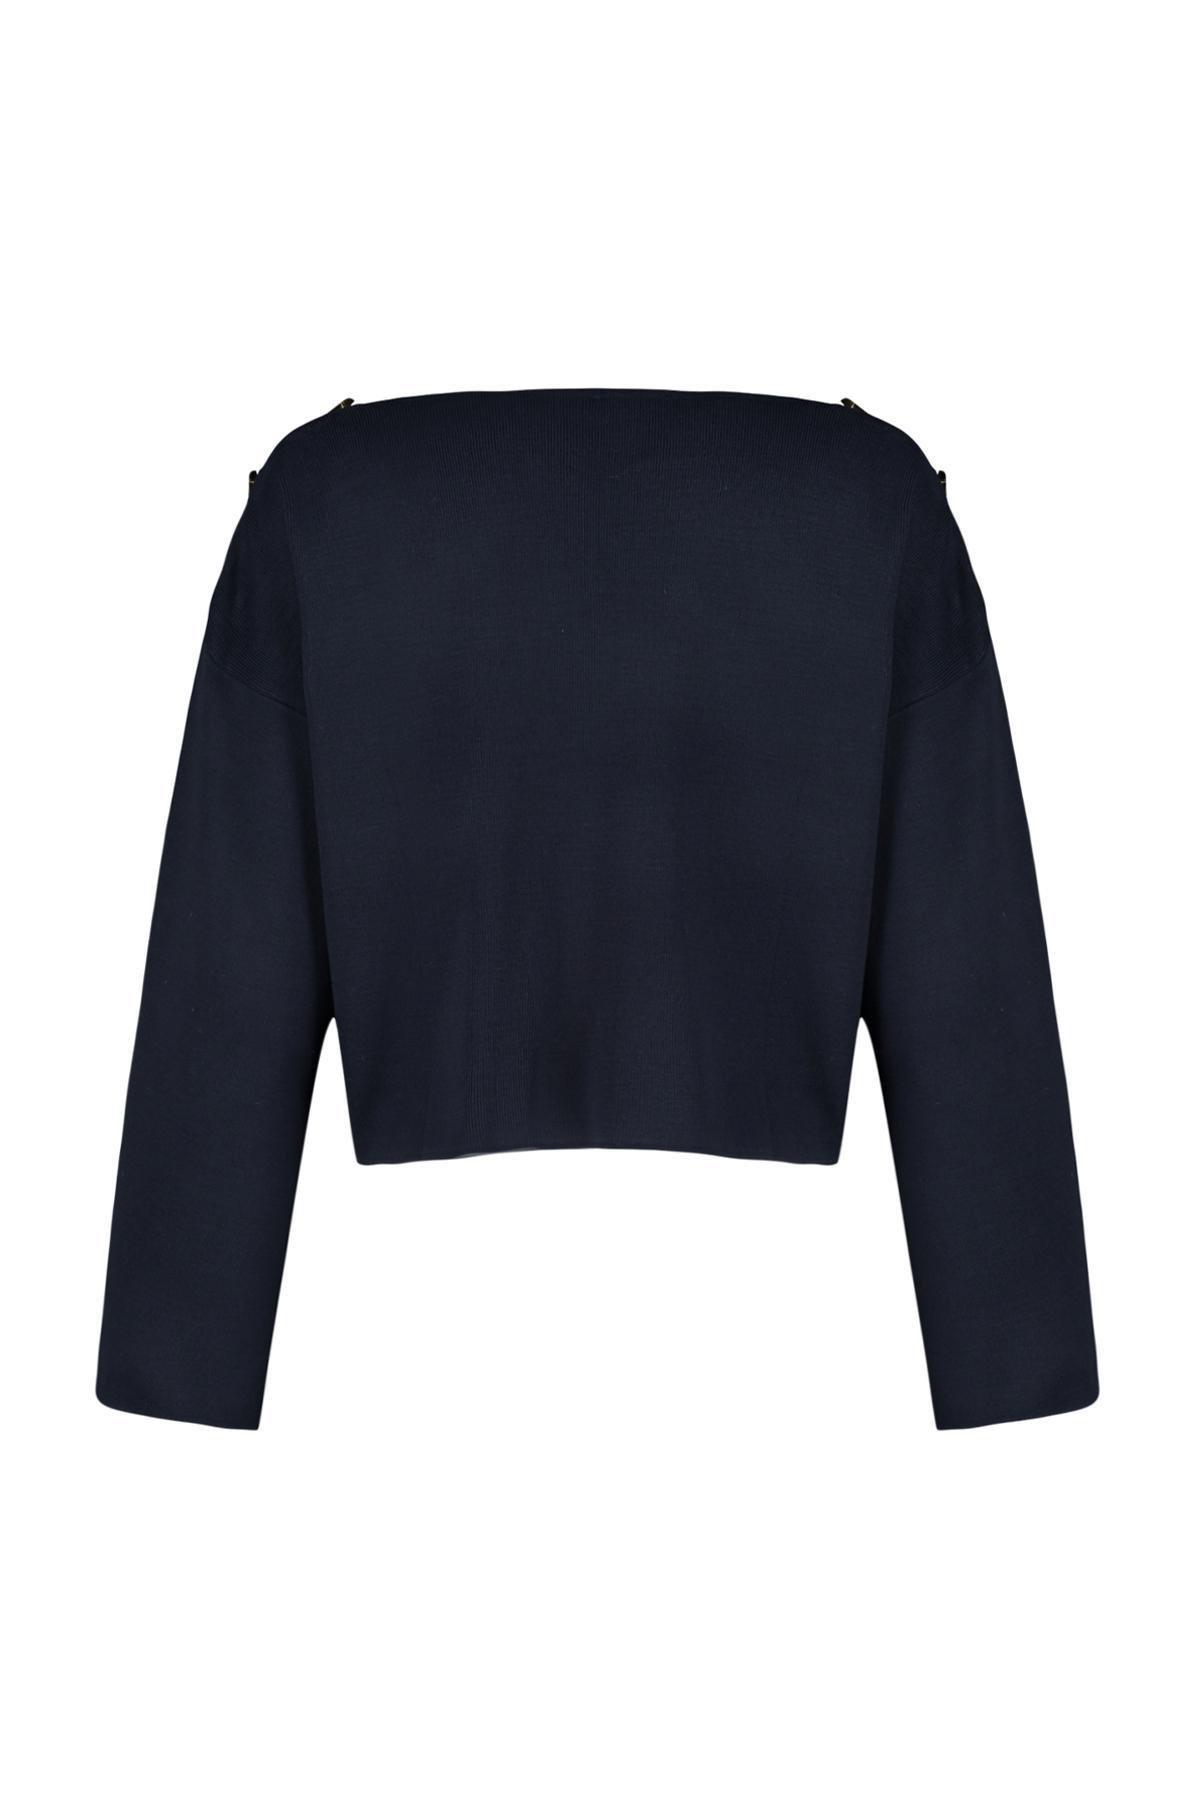 Trendyol - Navy Buttons Knitwear Sweater